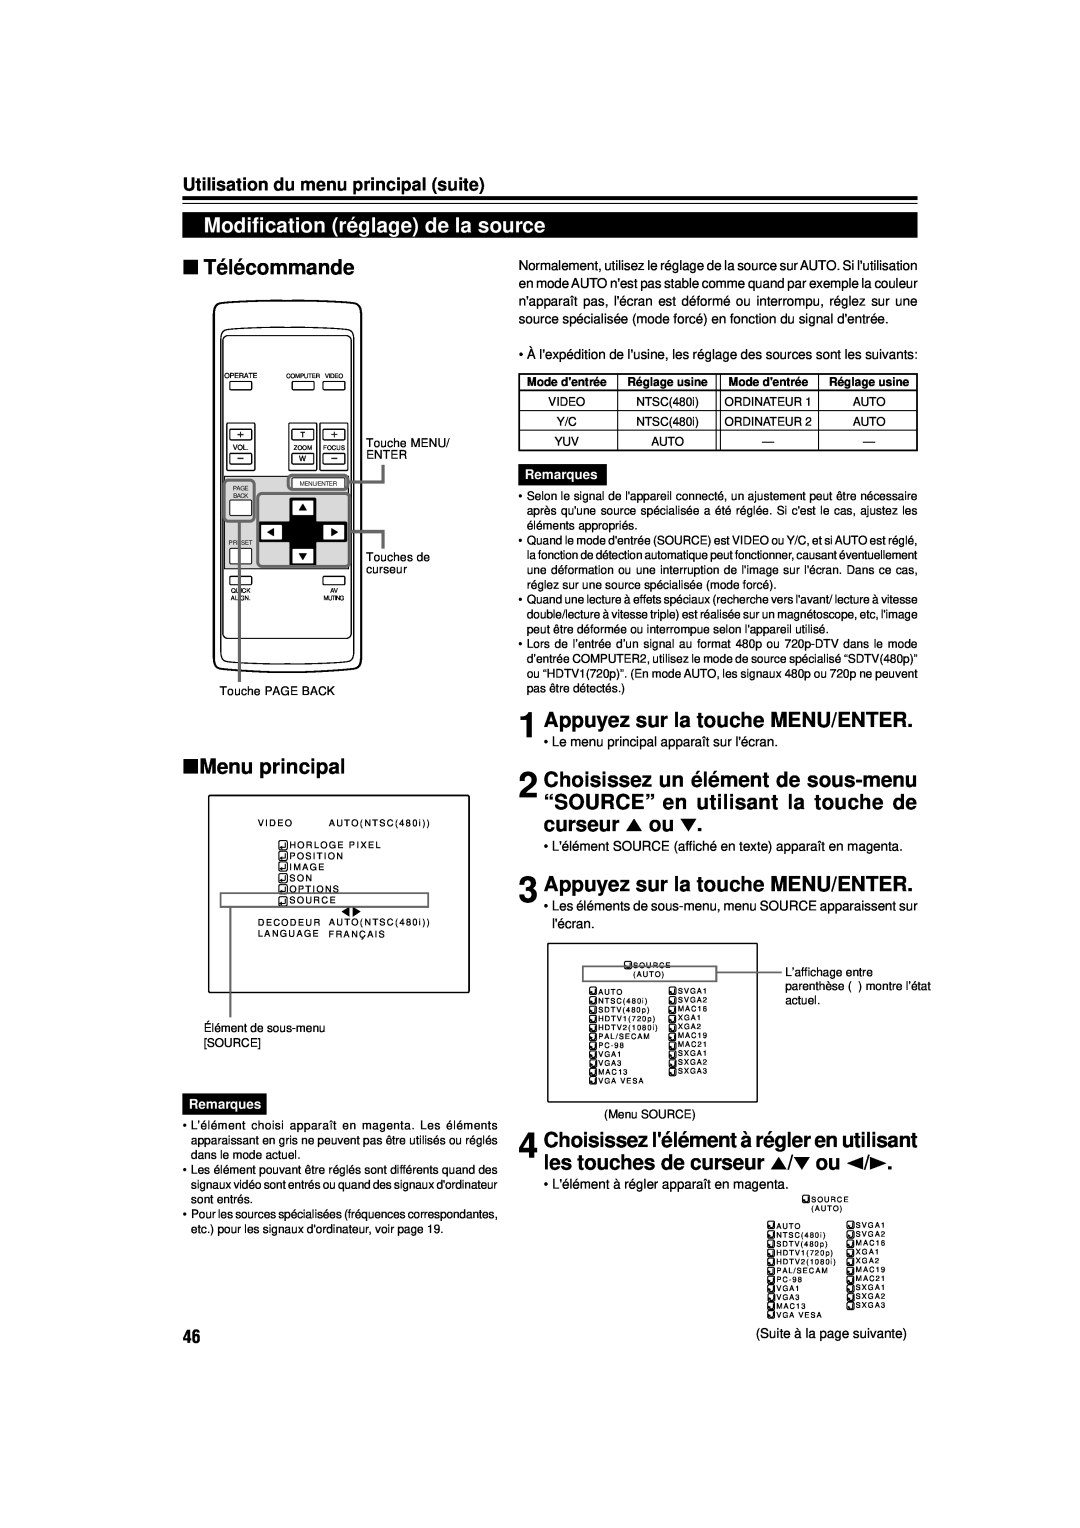 JVC DLA-M15U manual Modification réglage de la source, Télécommande, Menu principal, Utilisation du menu principal suite 